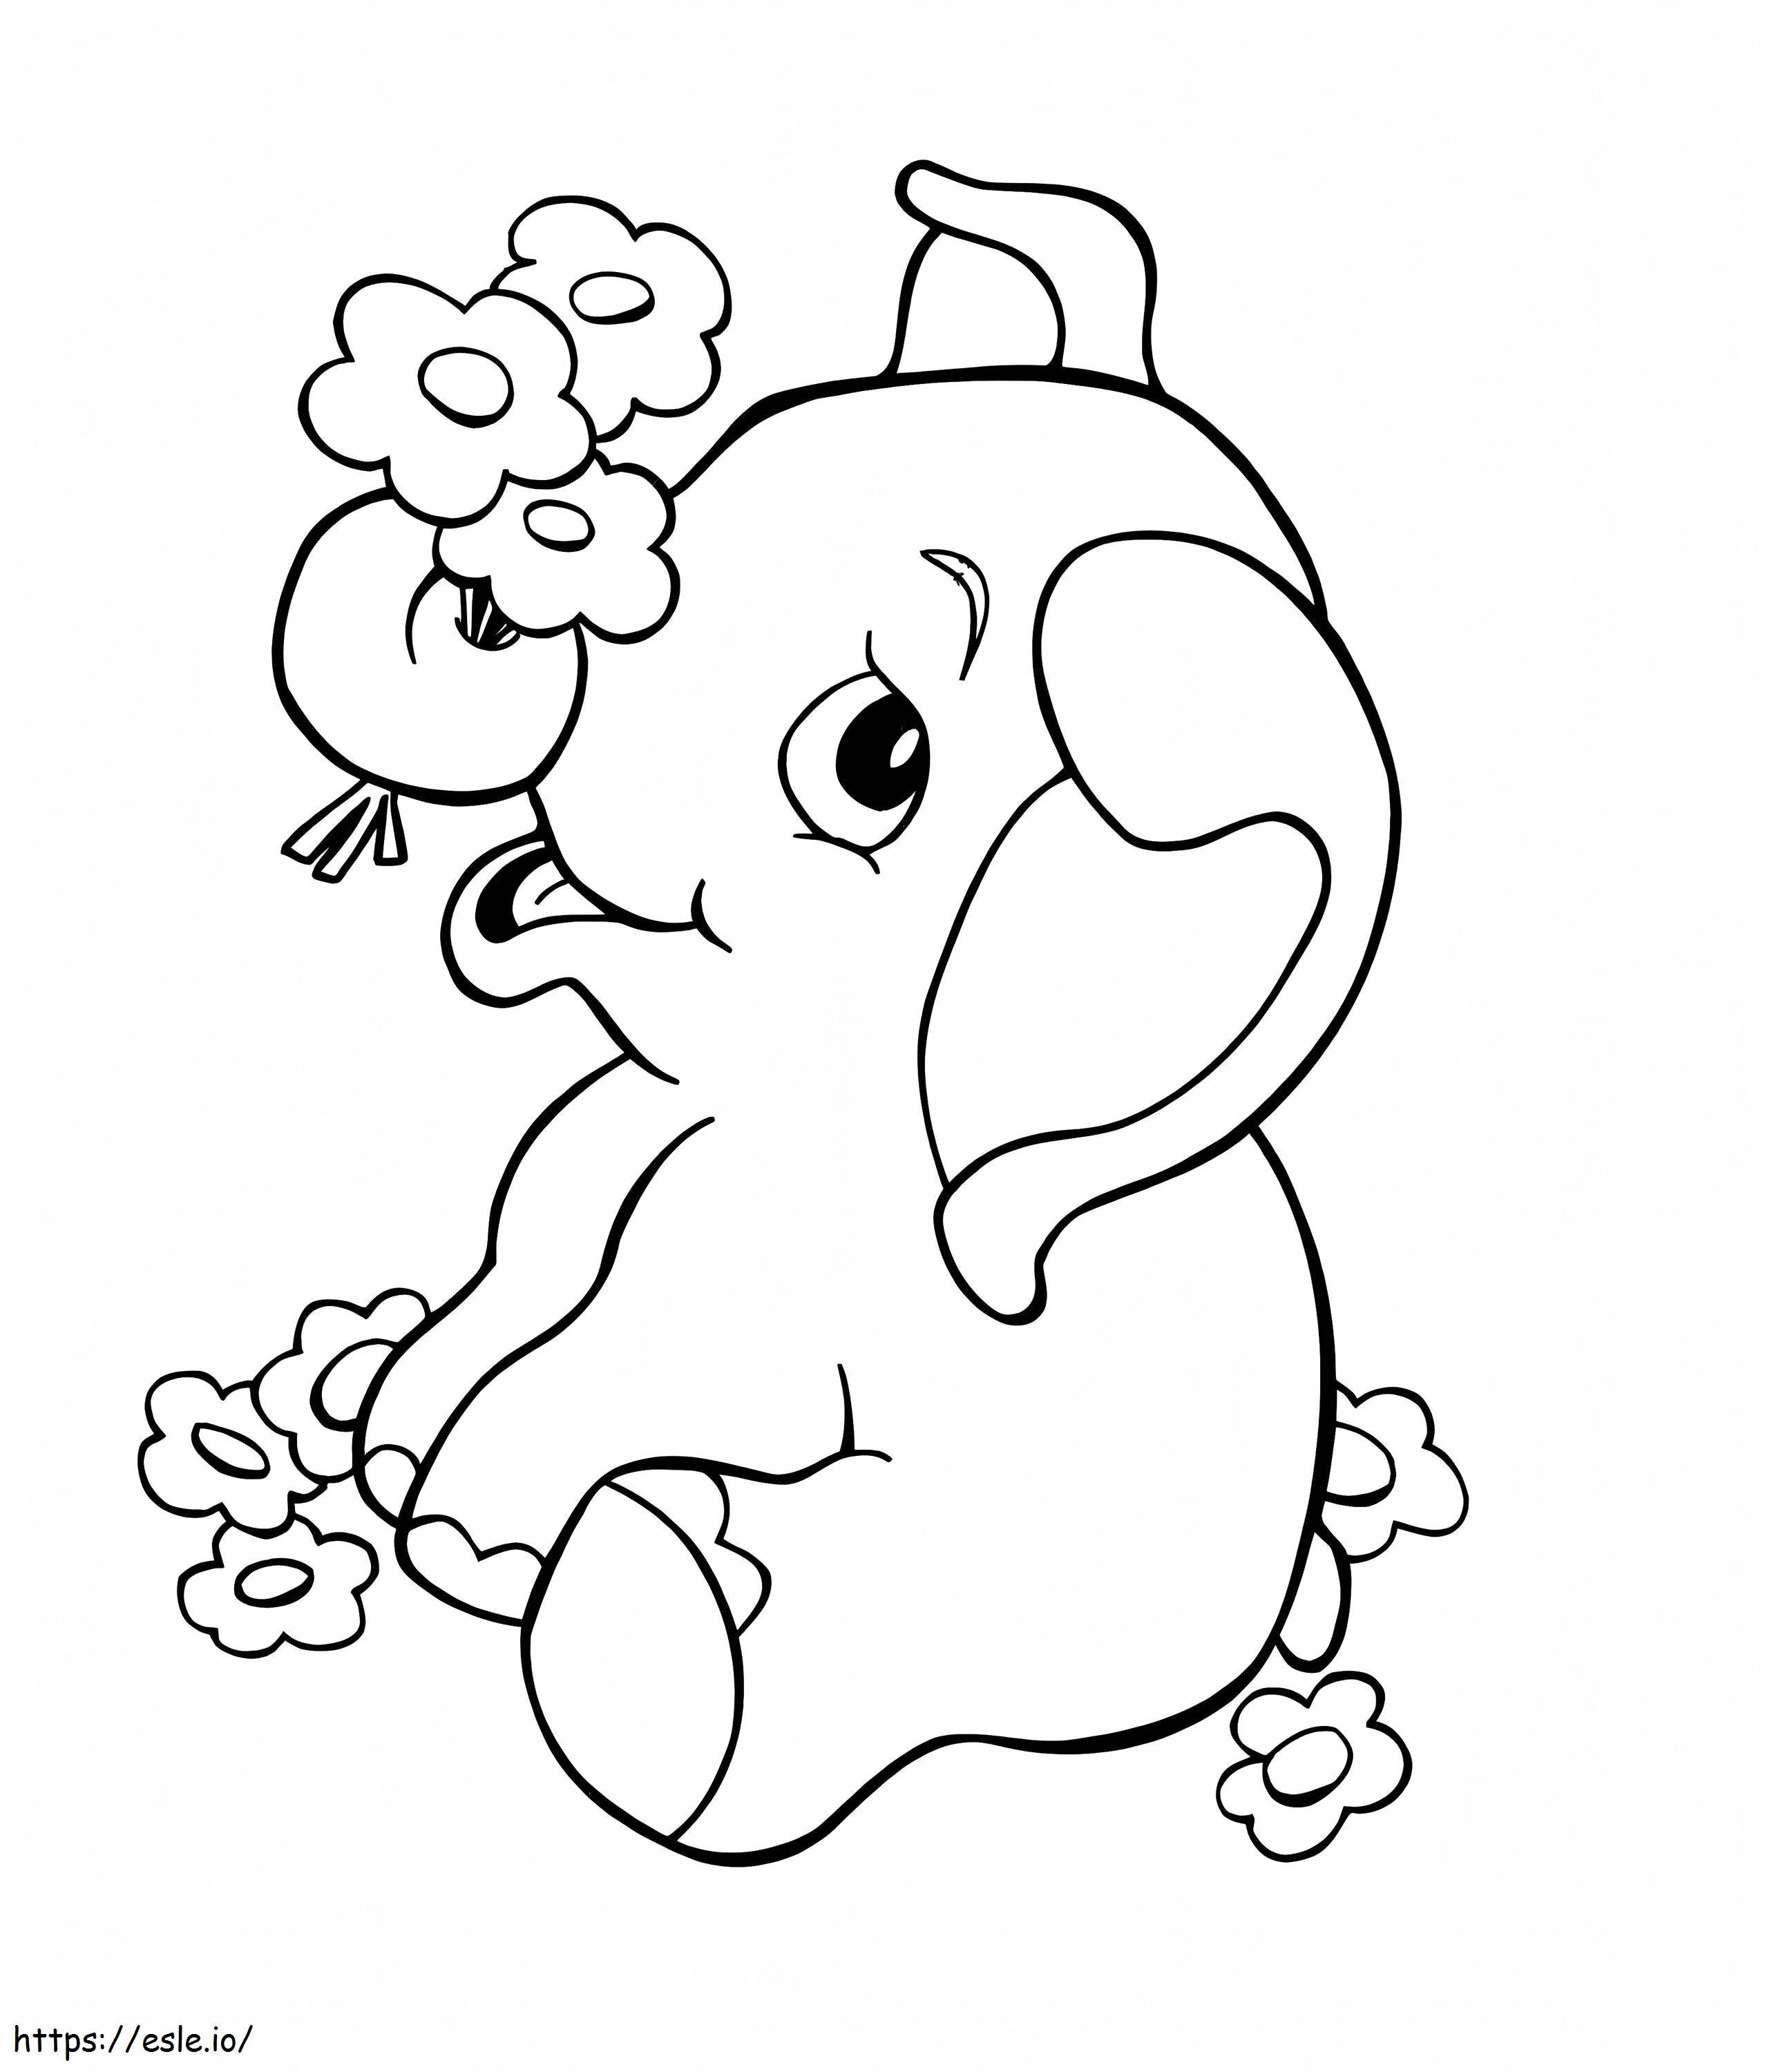 1570526314 Elefante para crianças Elefante de desenho animado Melhor impressão gratuita para crianças bebês empréstimos para melhoria da casa para crédito ruim para colorir